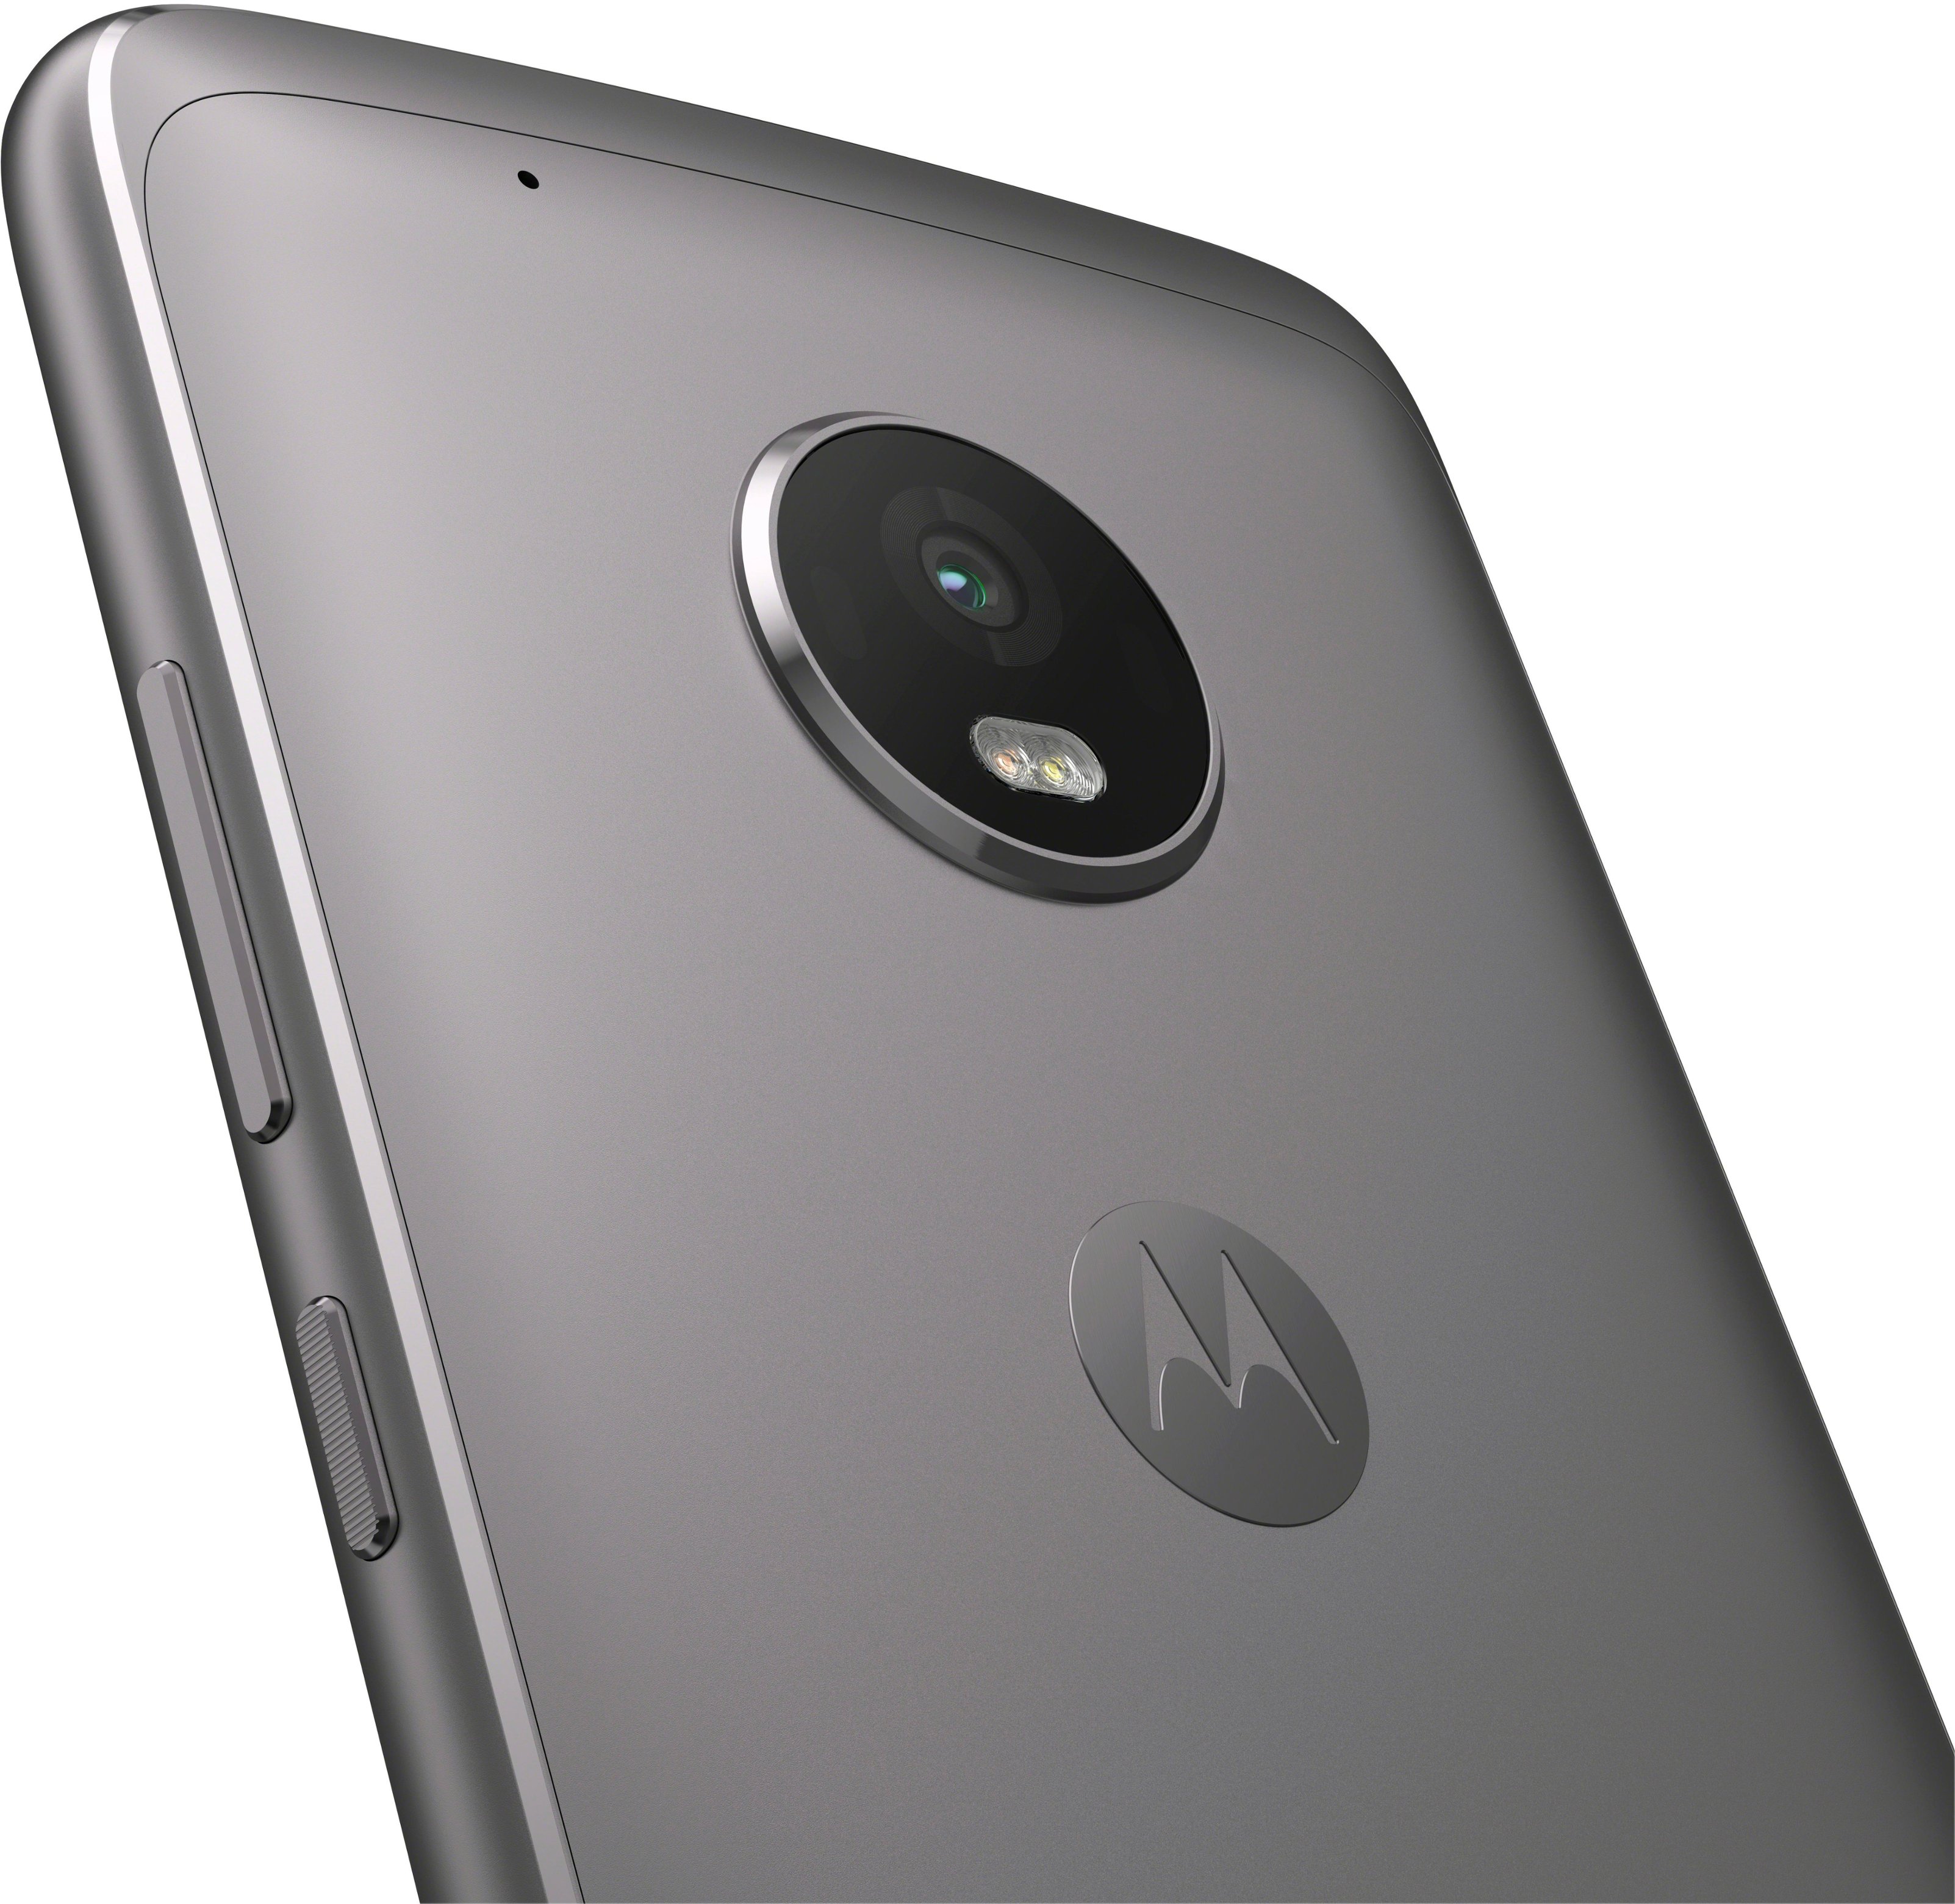 Smartphone Motorola Moto G4 Plus 32GB - Novo ou Usado - Outlet do